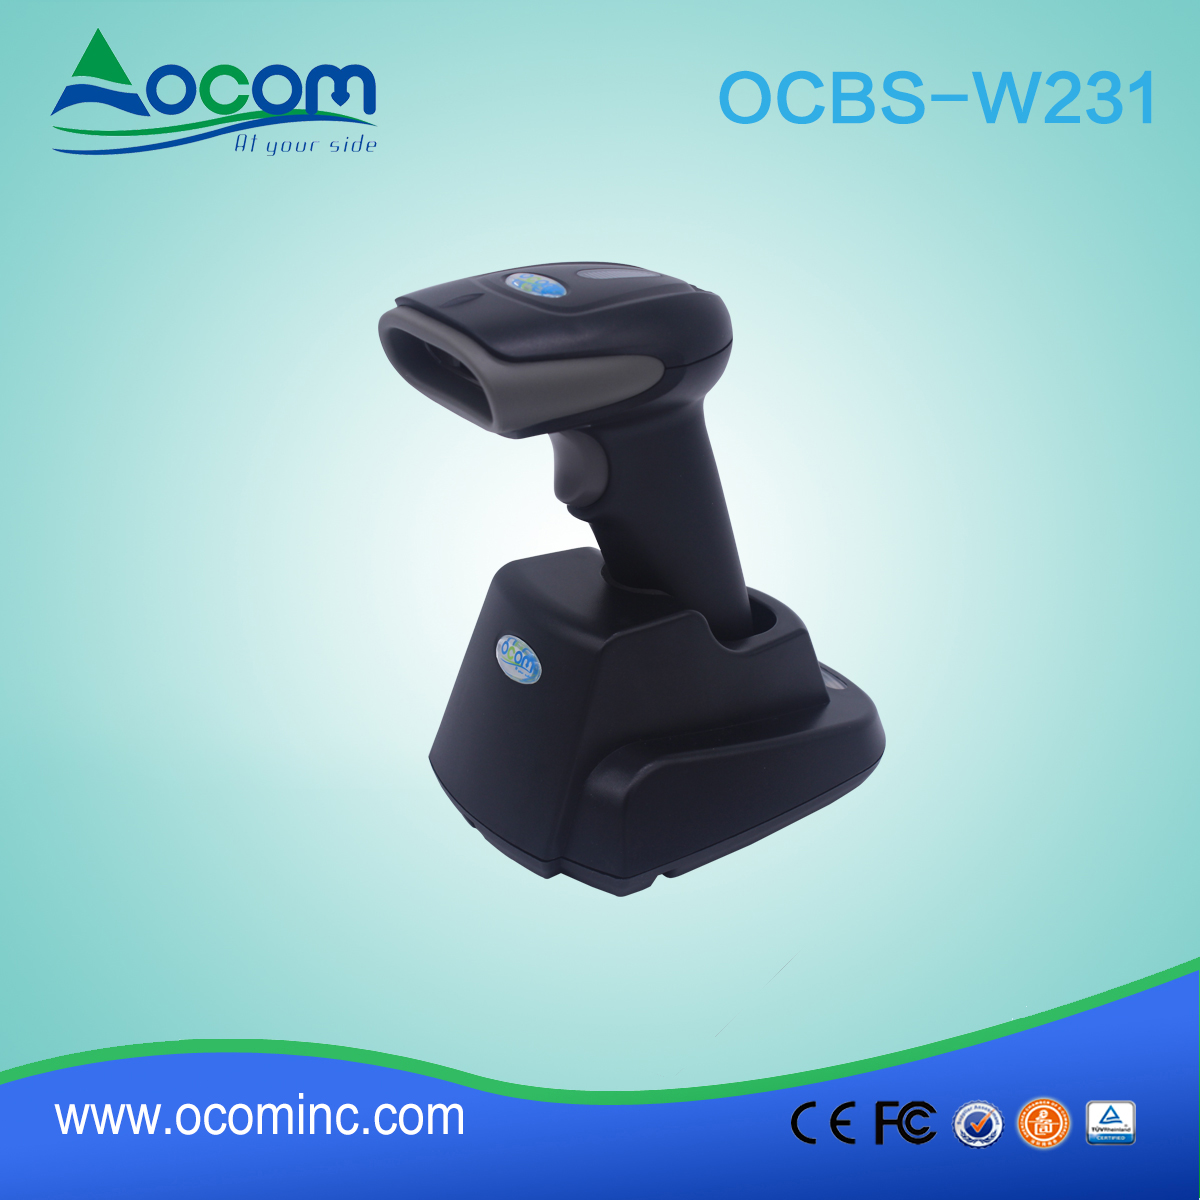 (OCBS-W231) Handleiding 2d barcodescanner met stand